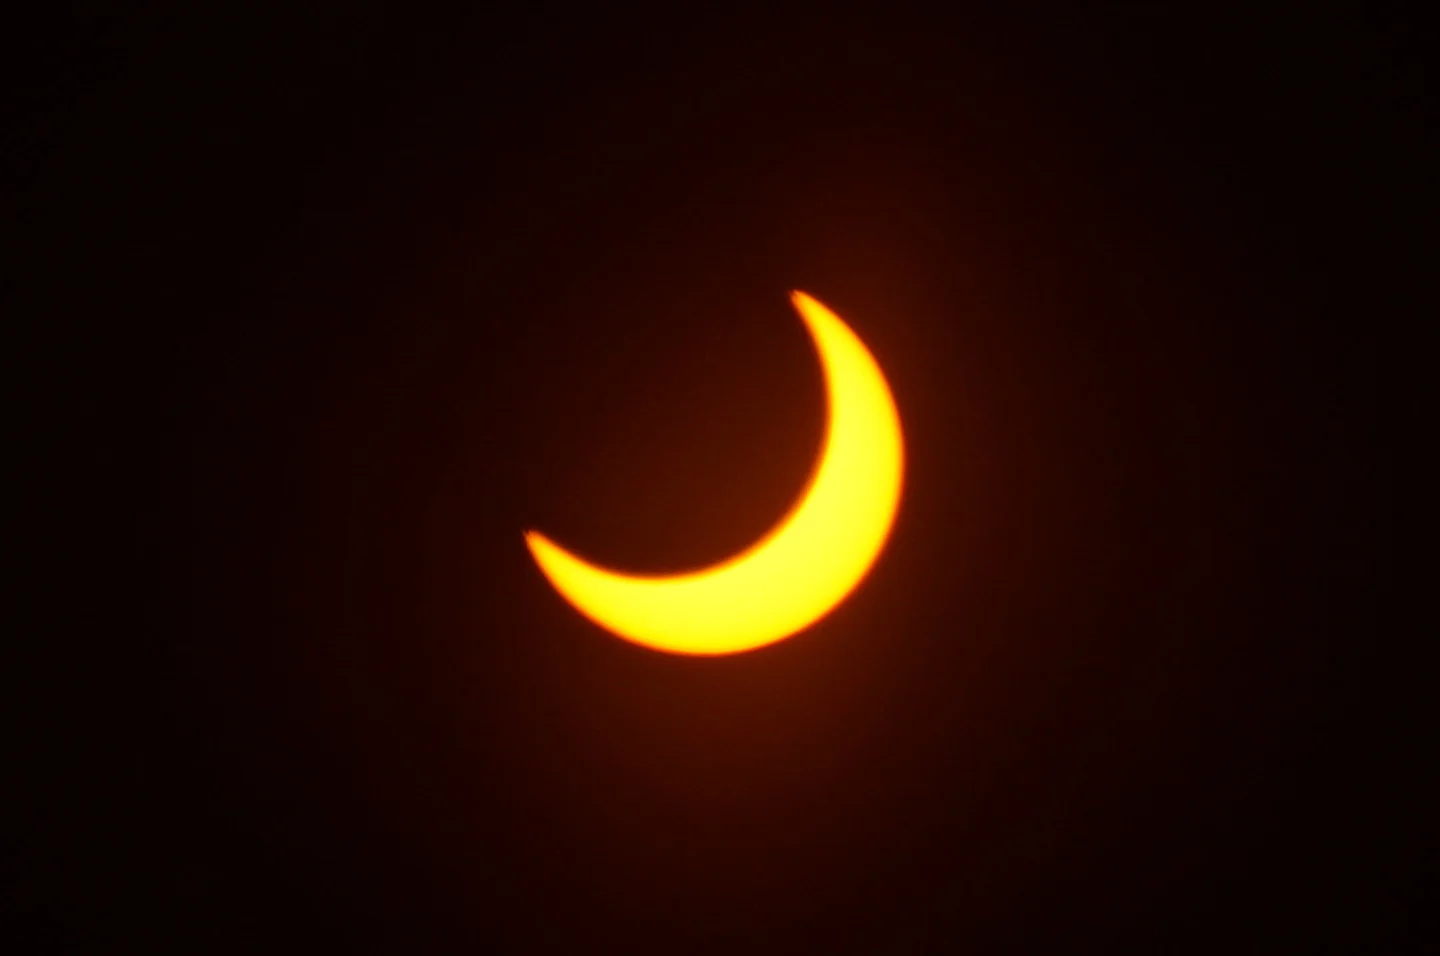 Voyez les images de la fascinante éclipse solaire partielle